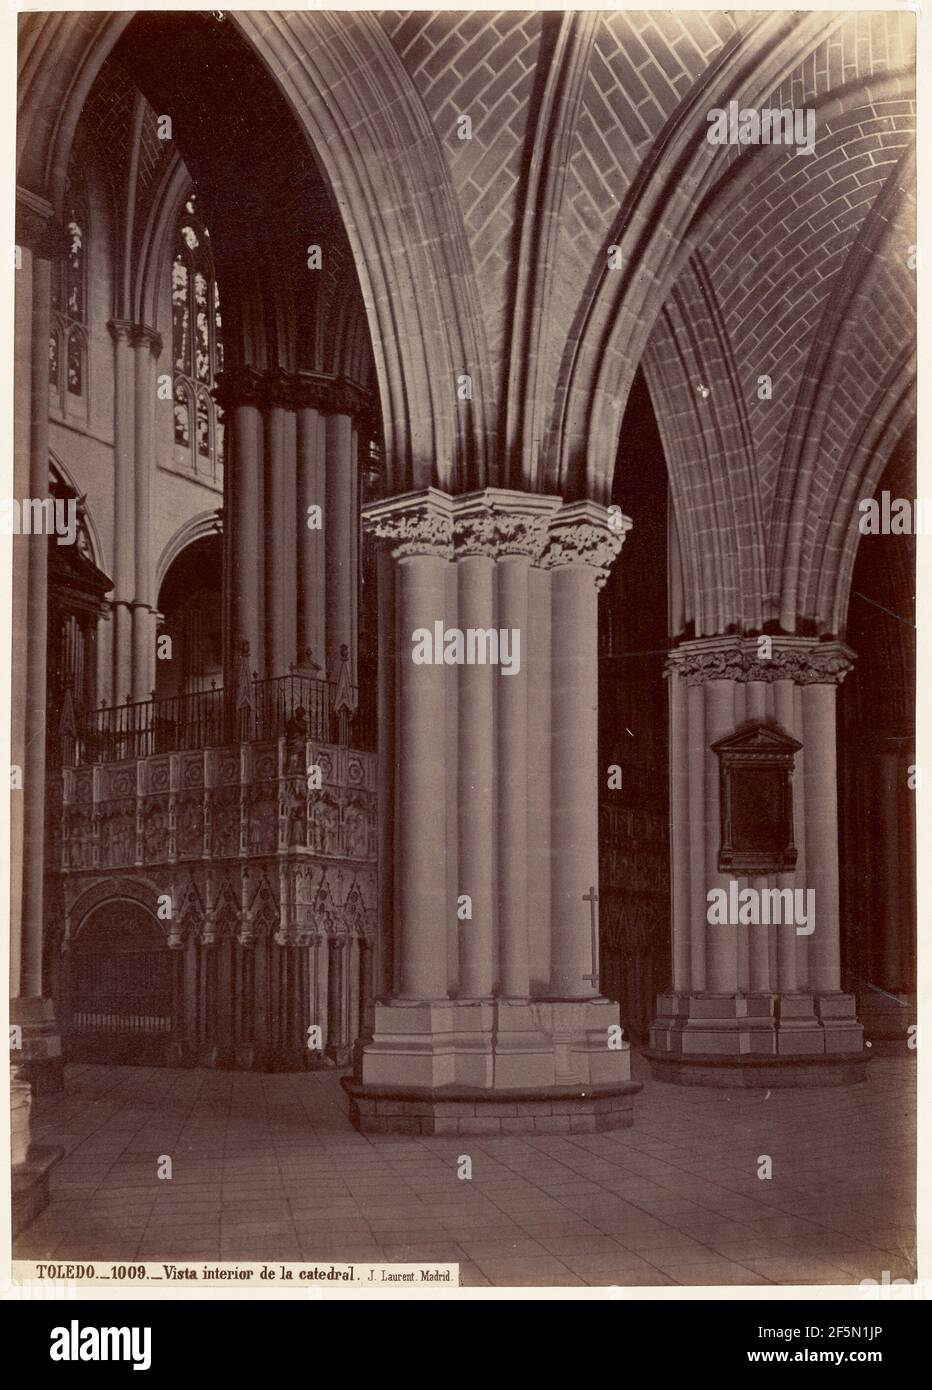 Vista interior de la catedral, Toledo. Juan Laurent (Französisch, 1816 - 1886) Stockfoto